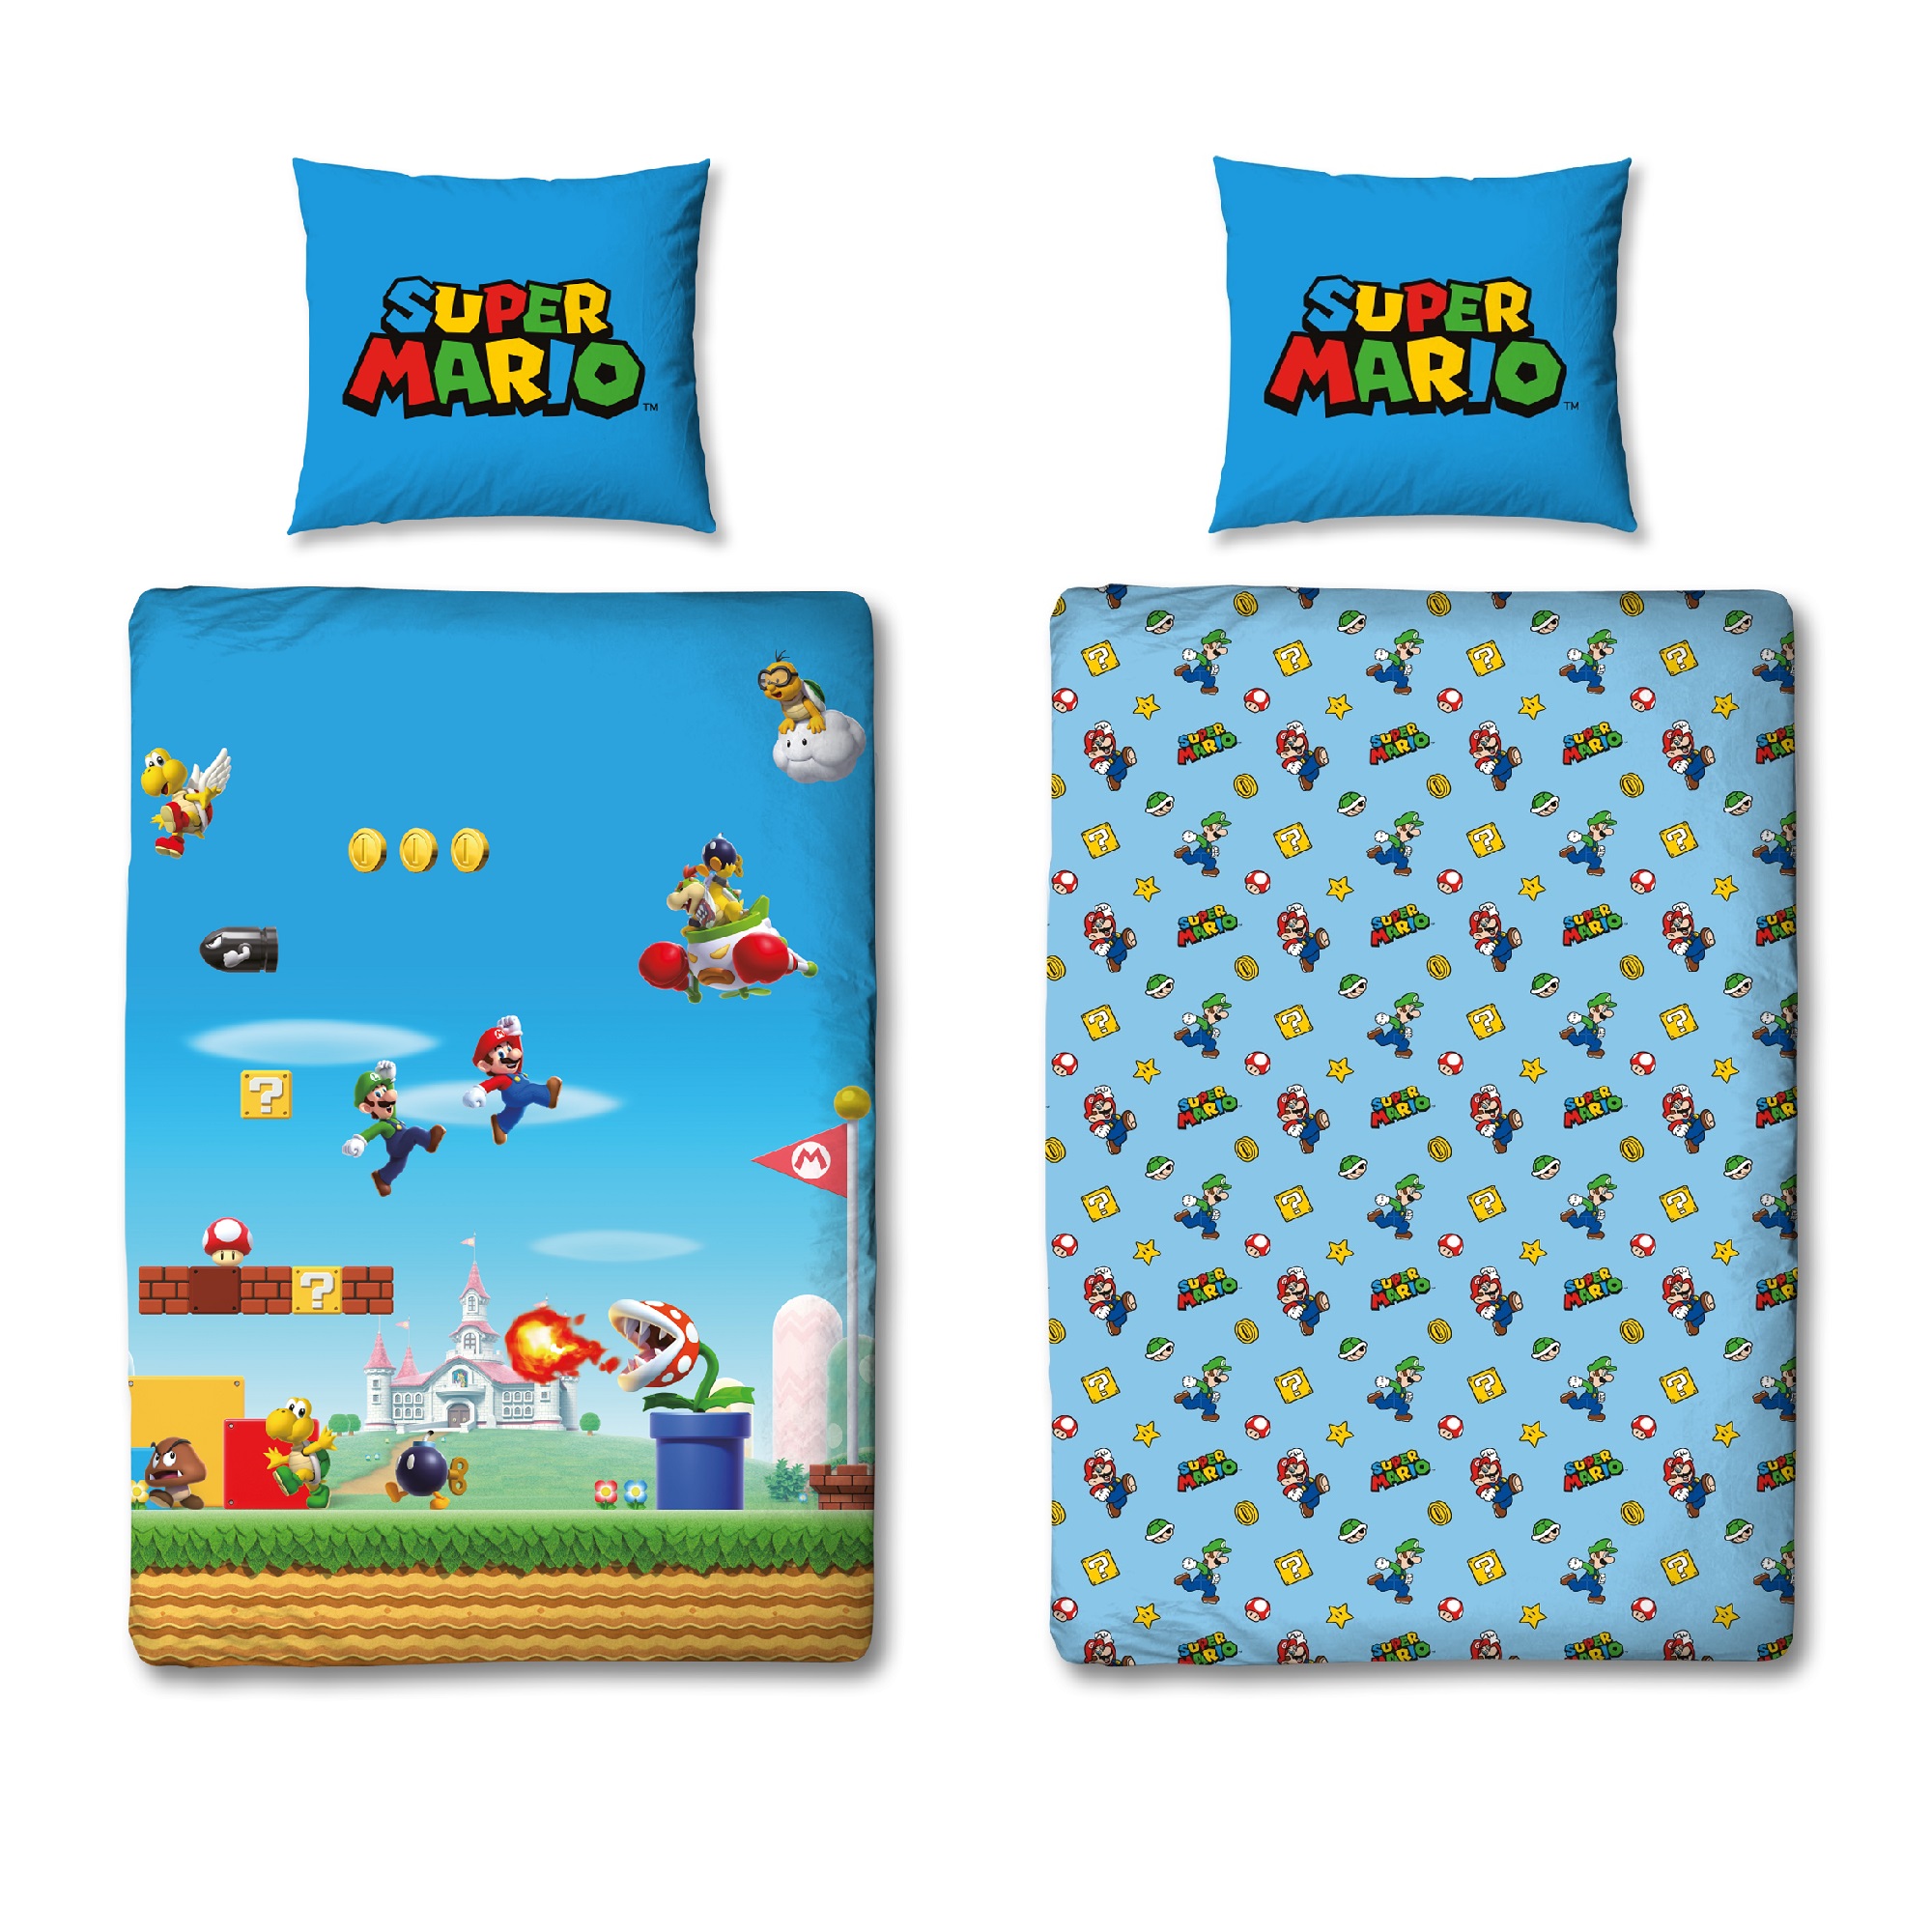 Kinderbettwäsche Jungen Super Mario mit Luigi im Level springend Nintendo